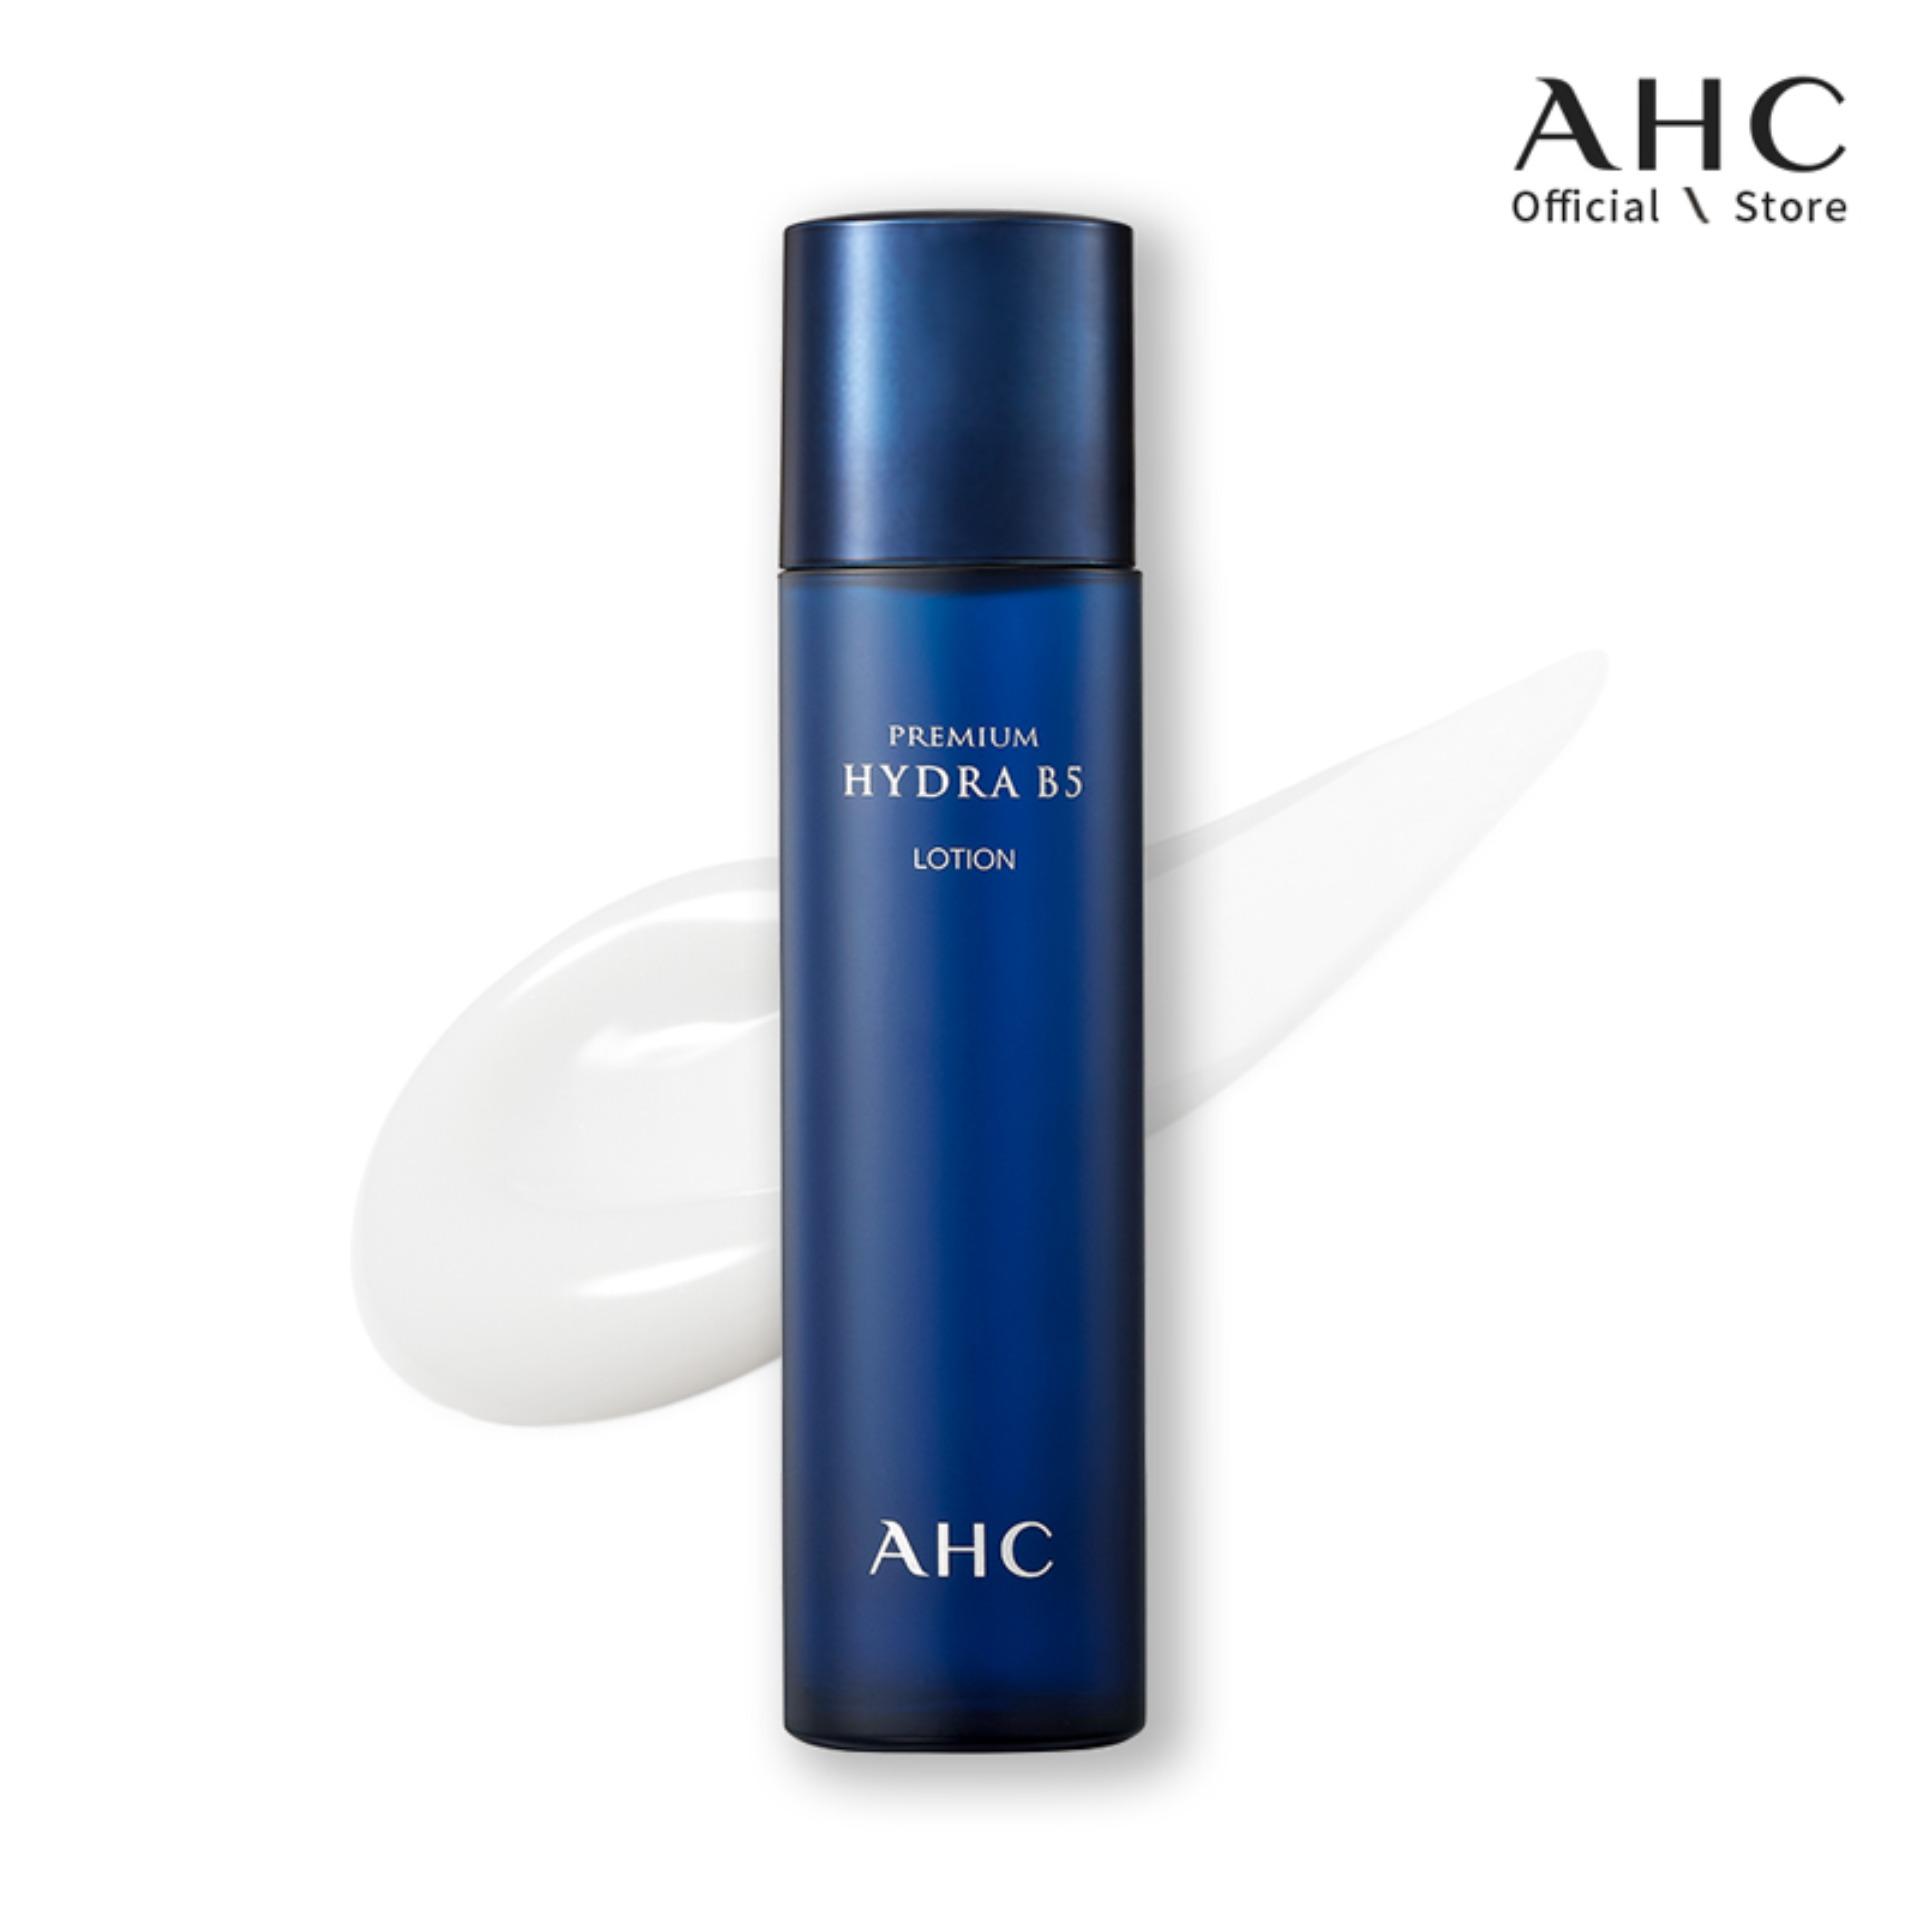 【AHC Premium Hydra B5 Cream】 at Low Price - TofuSecret™